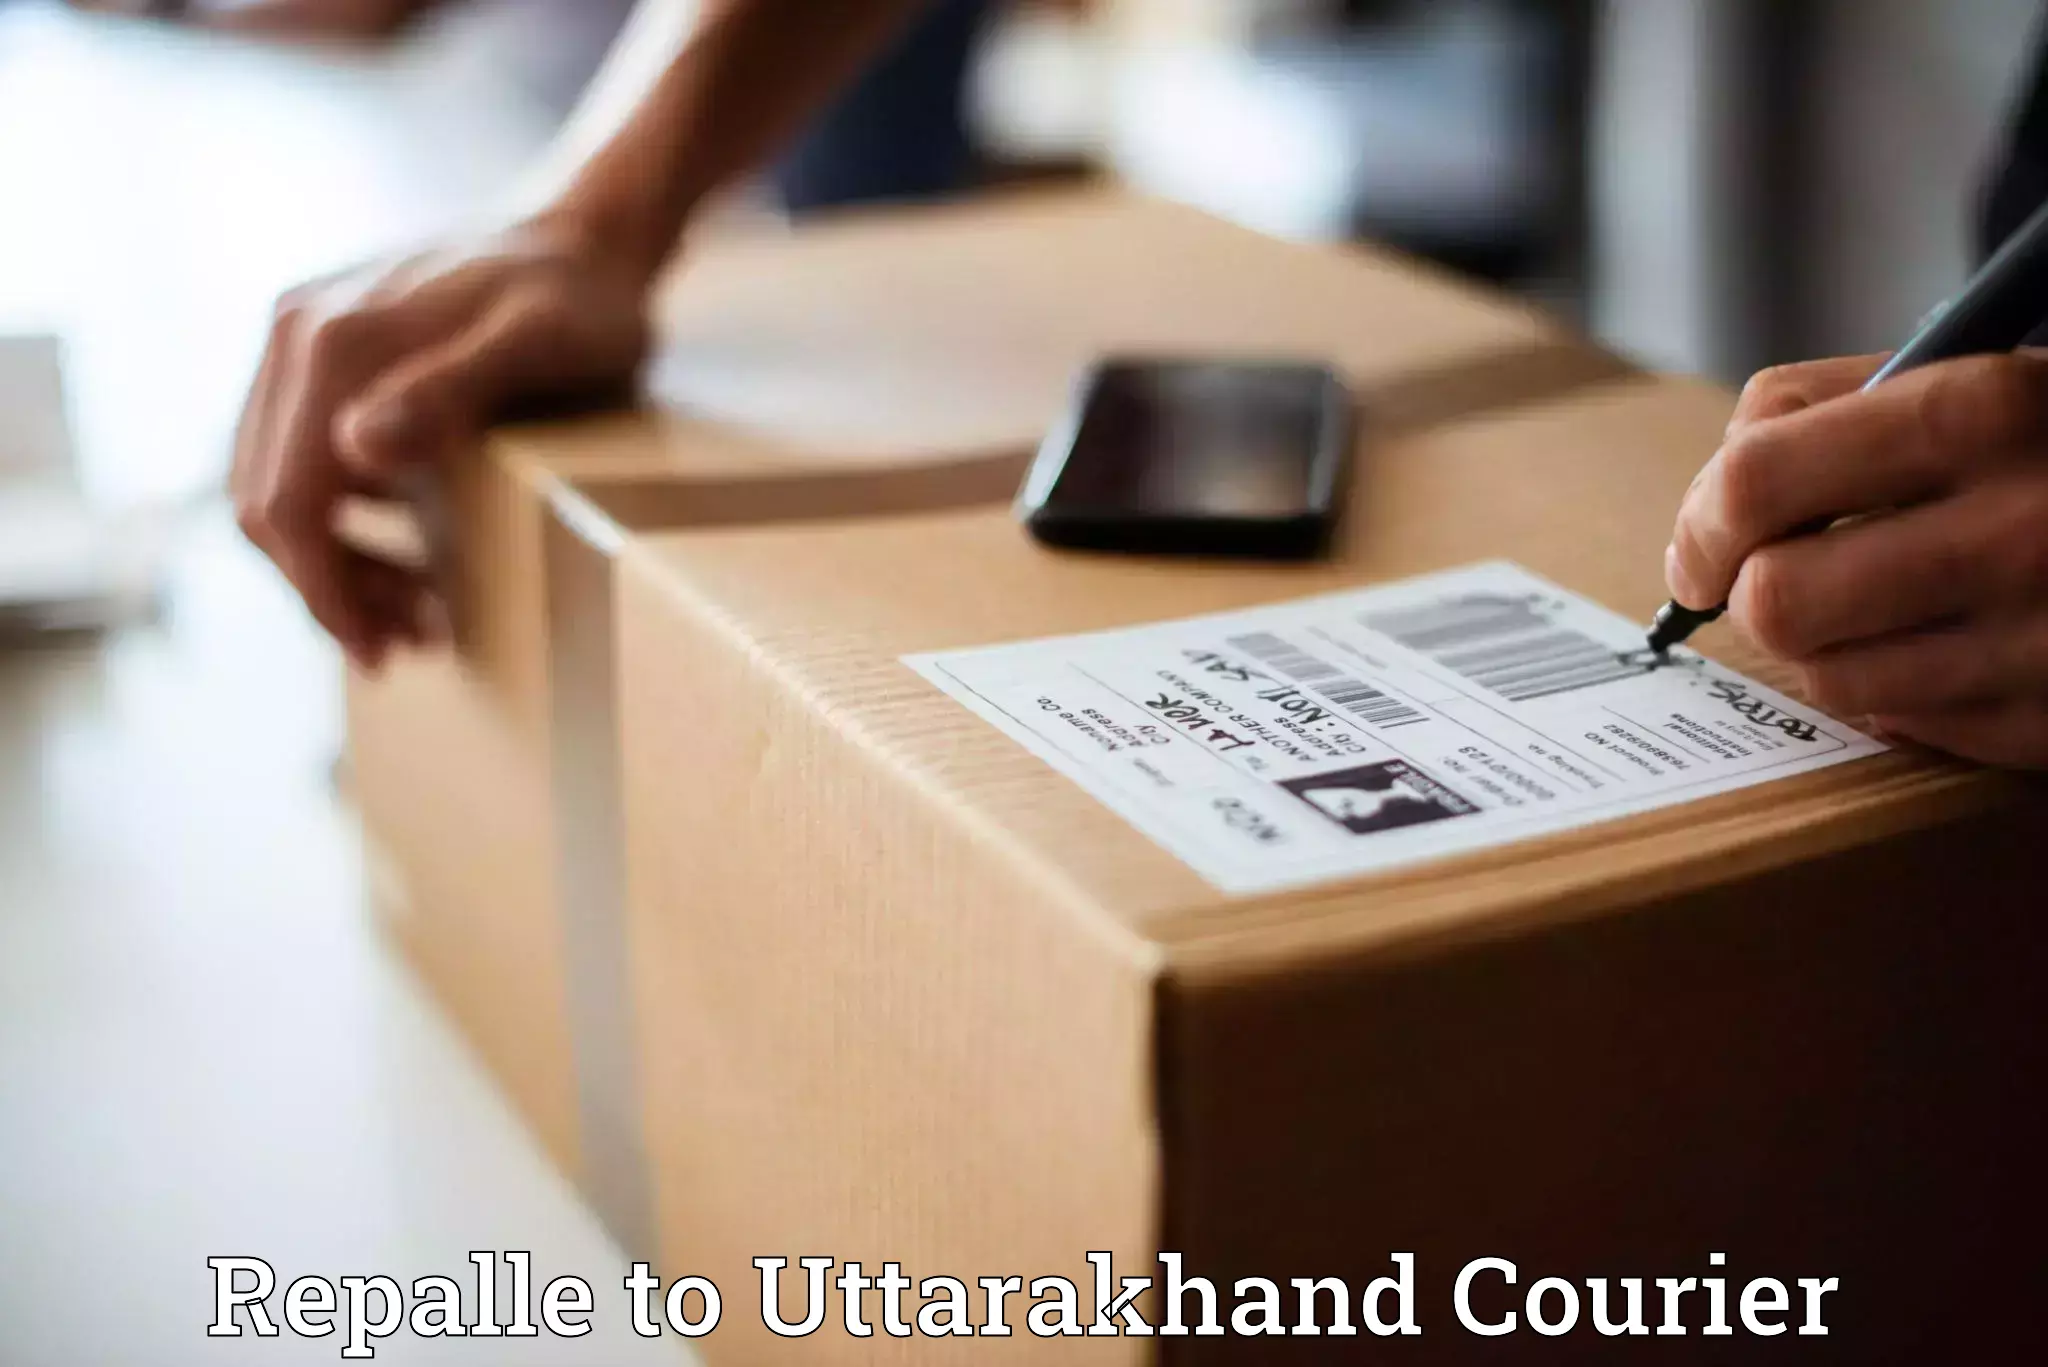 Efficient parcel service Repalle to Srinagar Pauri Garhwal